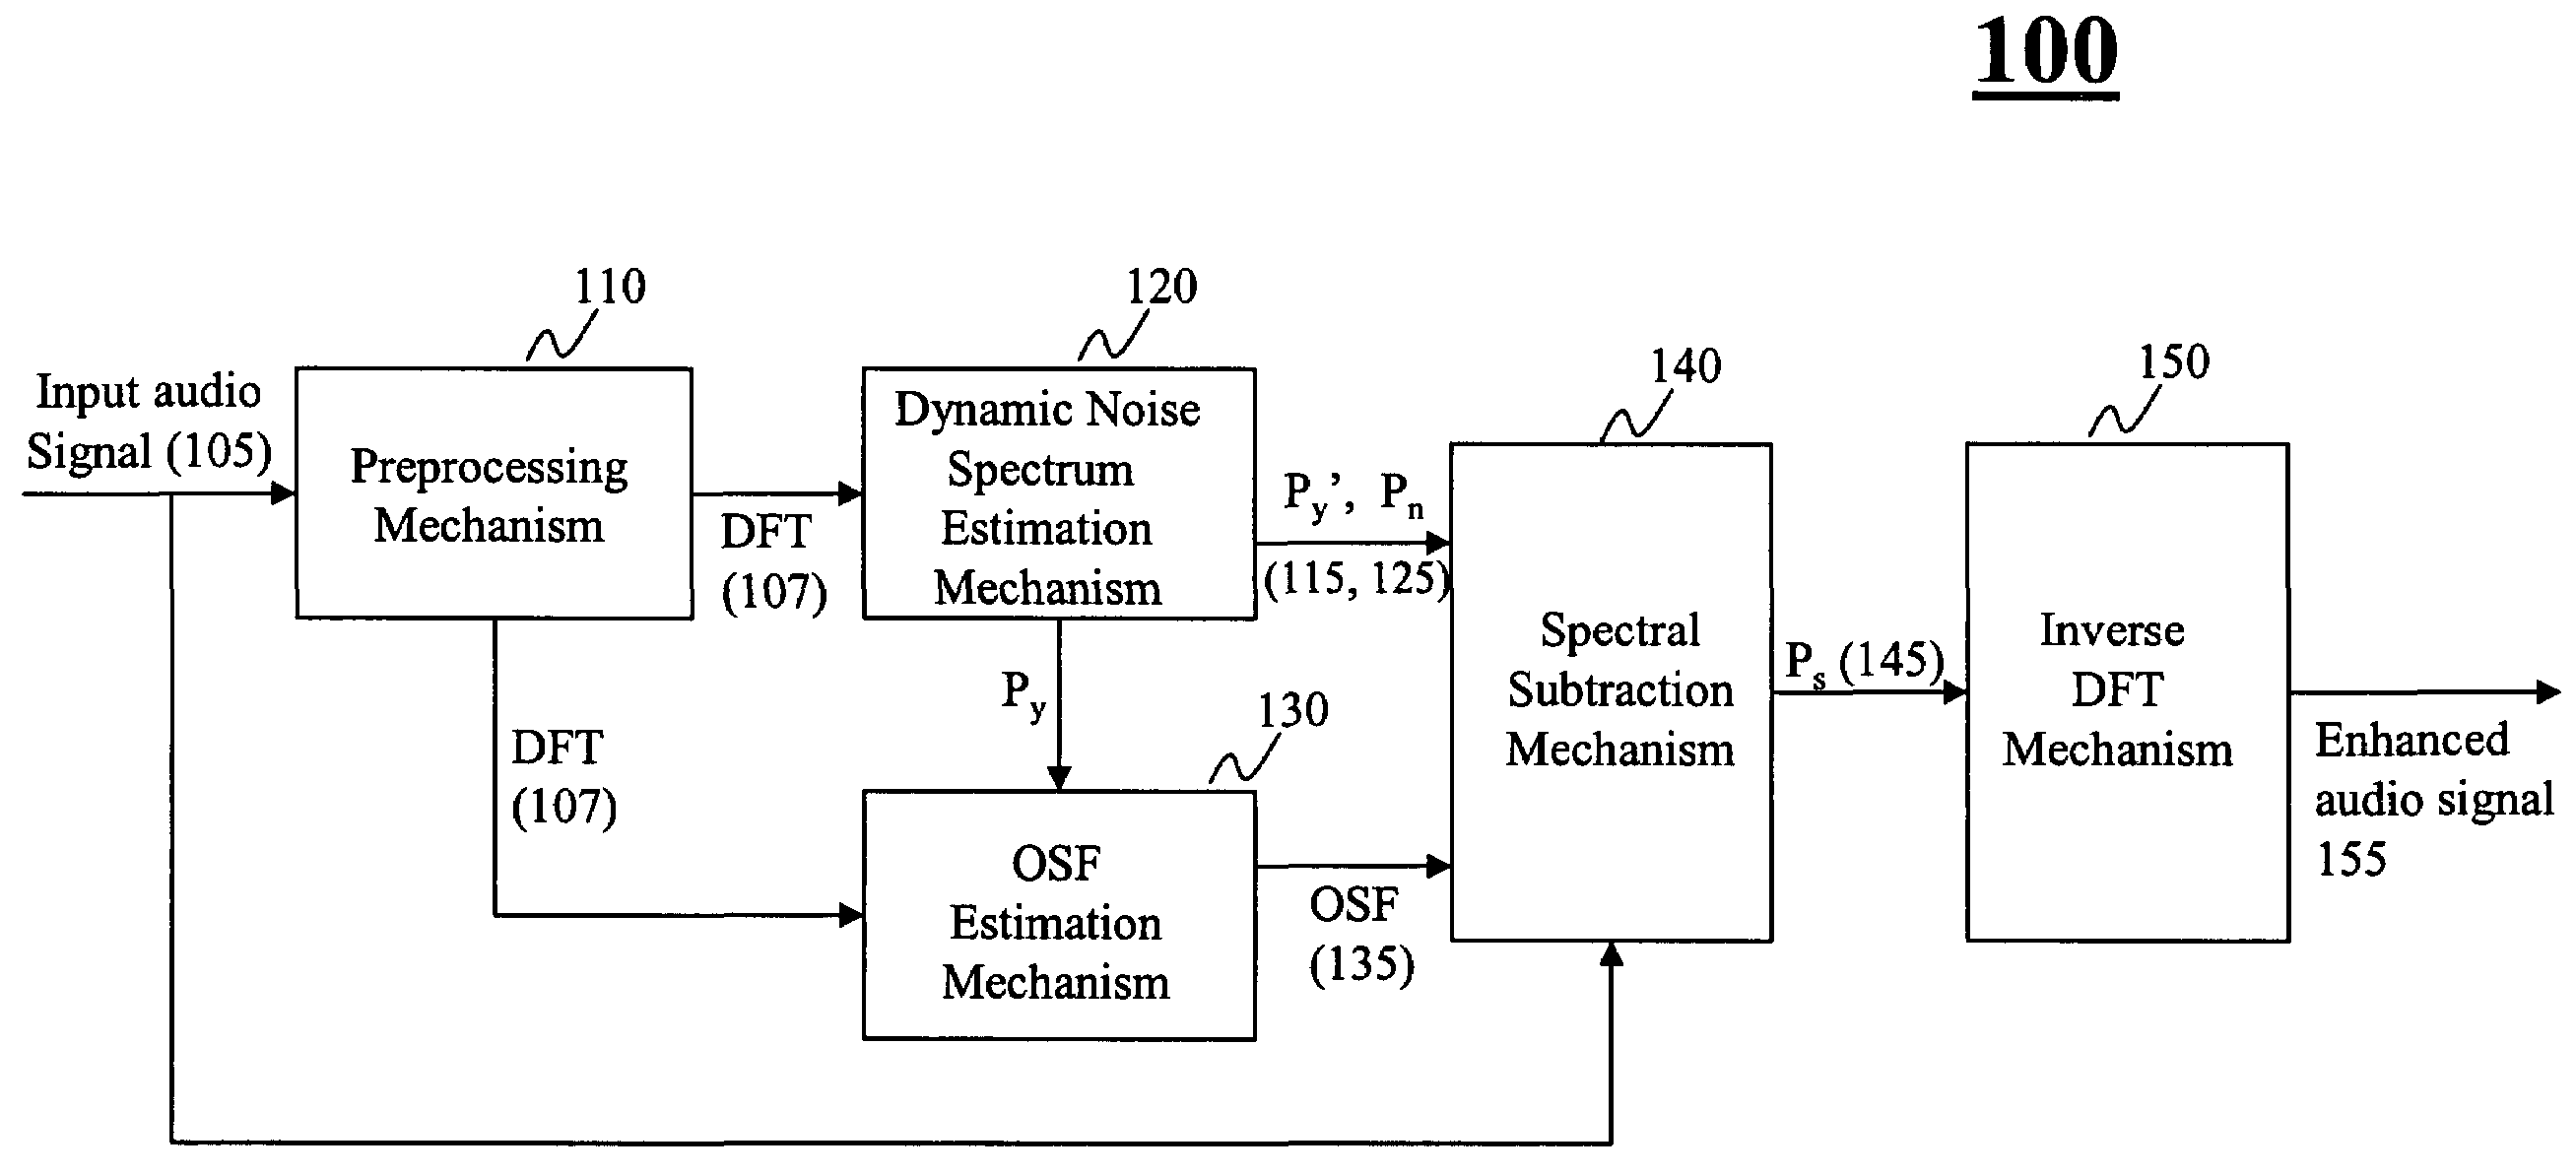 Method for spectral subtraction in speech enhancement